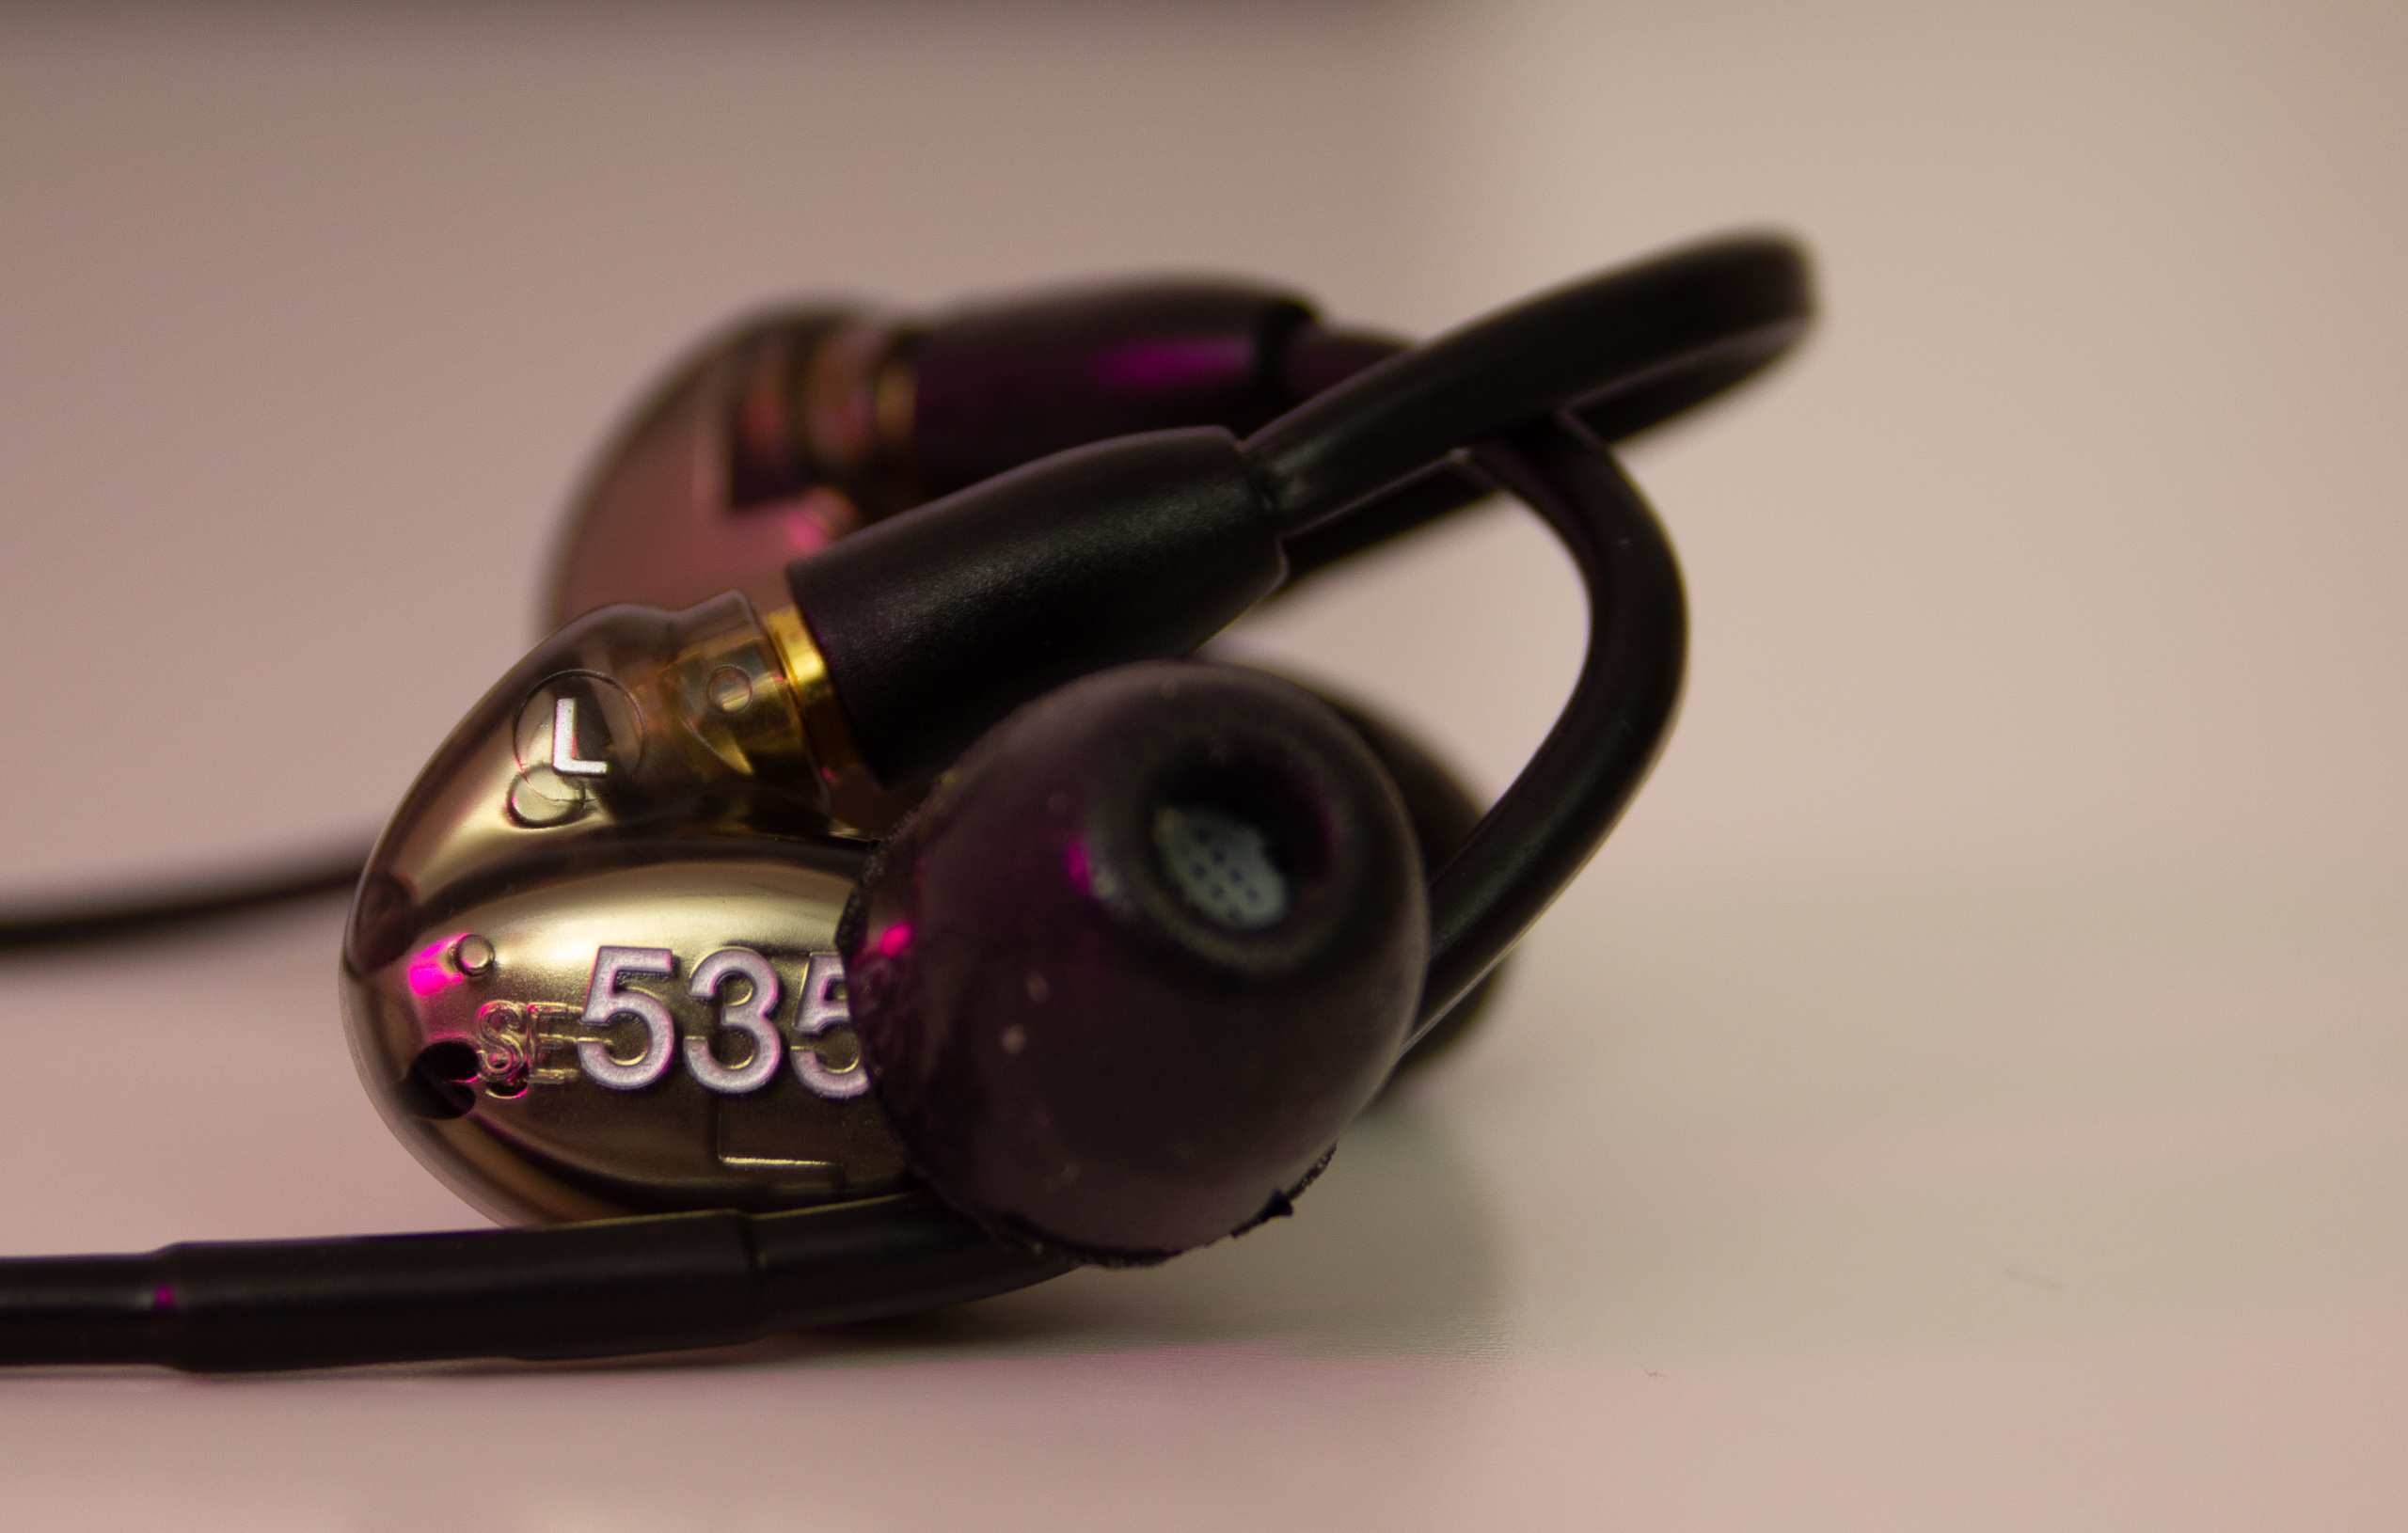 オーディオ機器 イヤフォン Shure SE535 Earbud Review - Worth every cent | The Nerdy